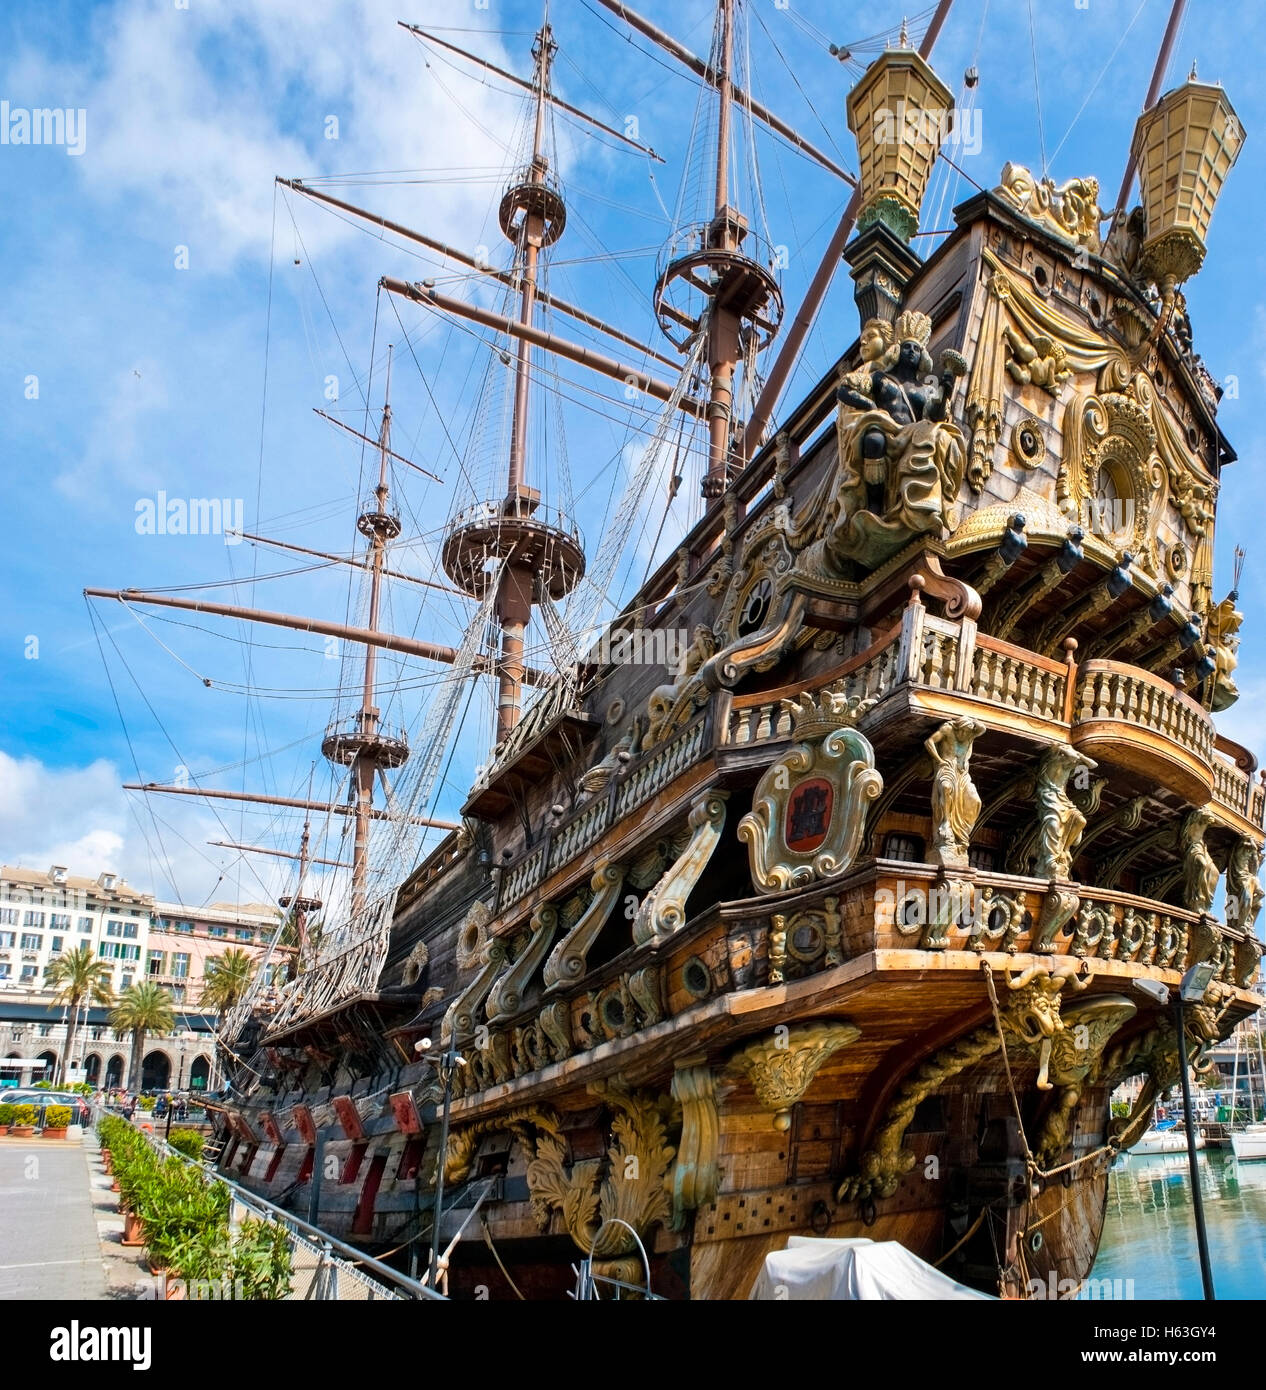 Le Galeon Neptune est une réplique d'un navire 17e siècle galion espagnol. Le Neptune est en ce moment l'attraction touristique Banque D'Images